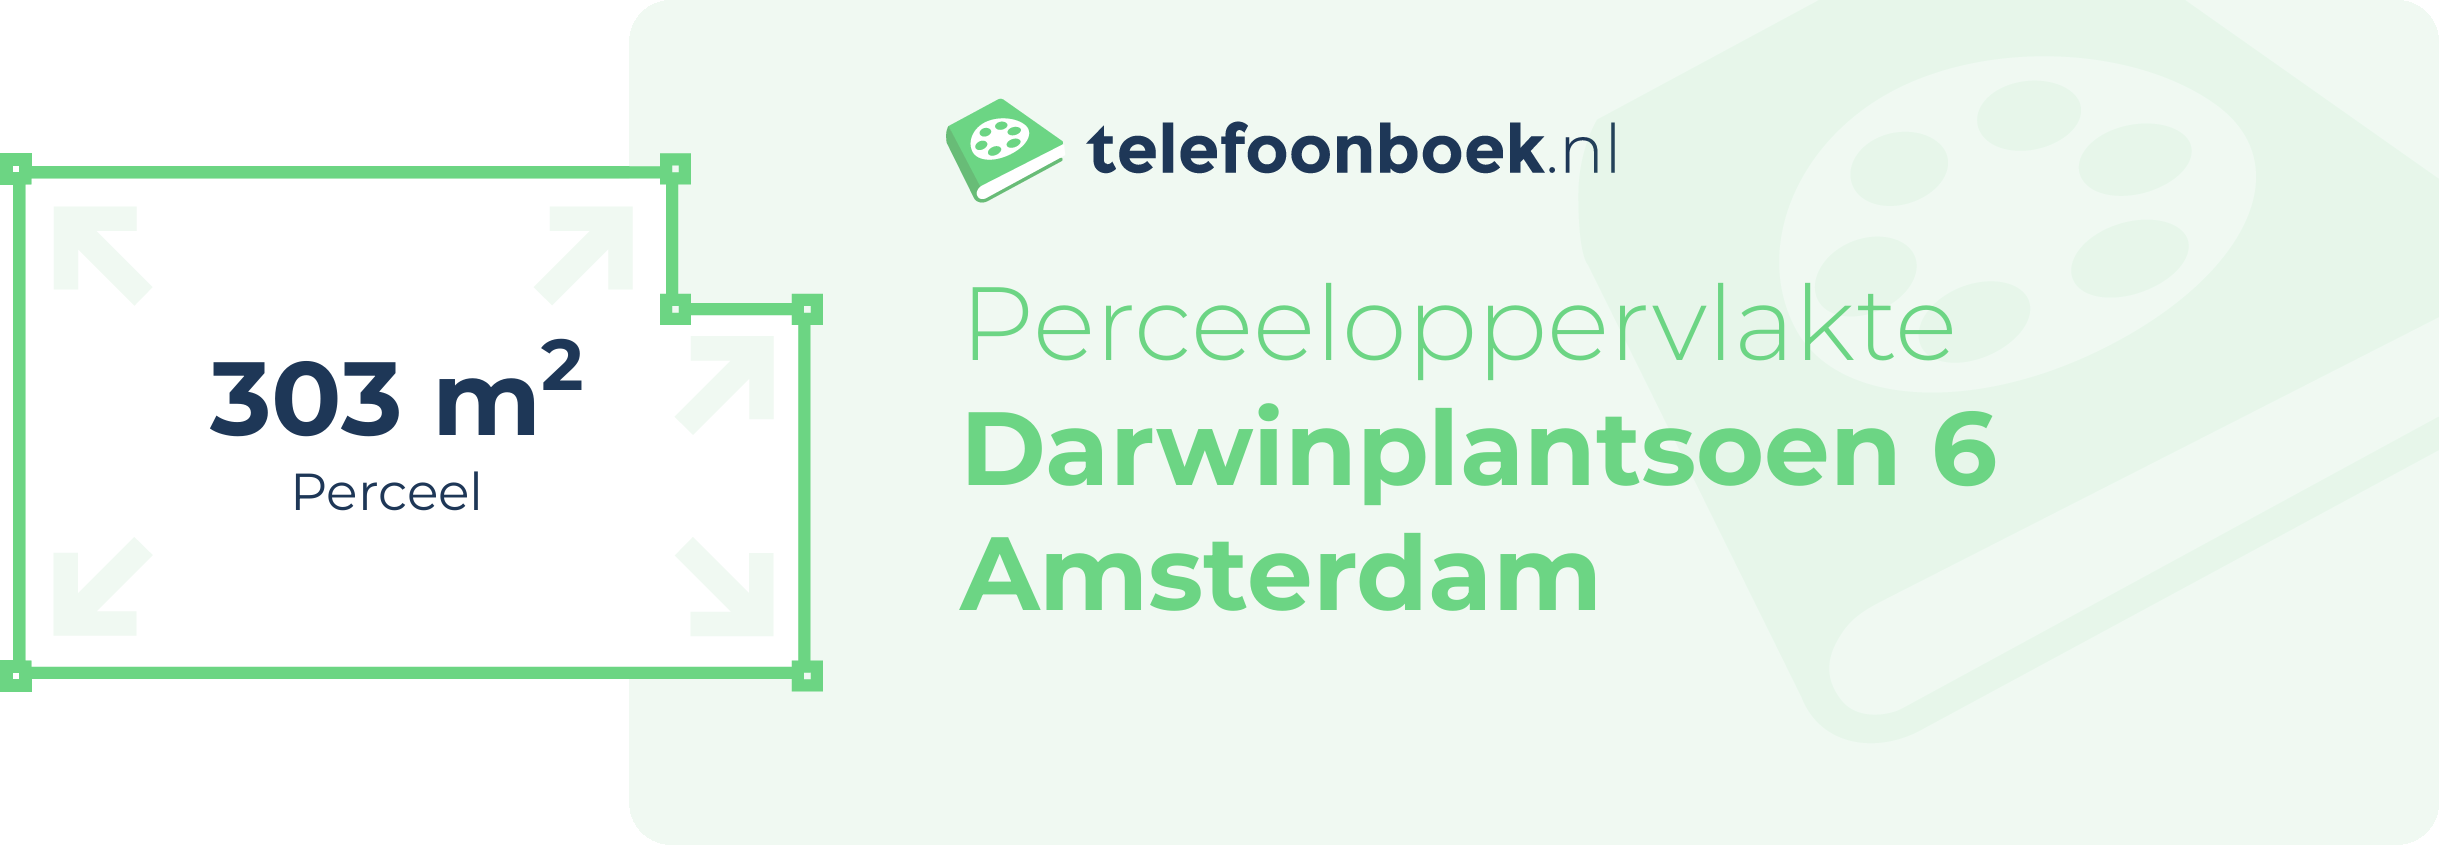 Perceeloppervlakte Darwinplantsoen 6 Amsterdam